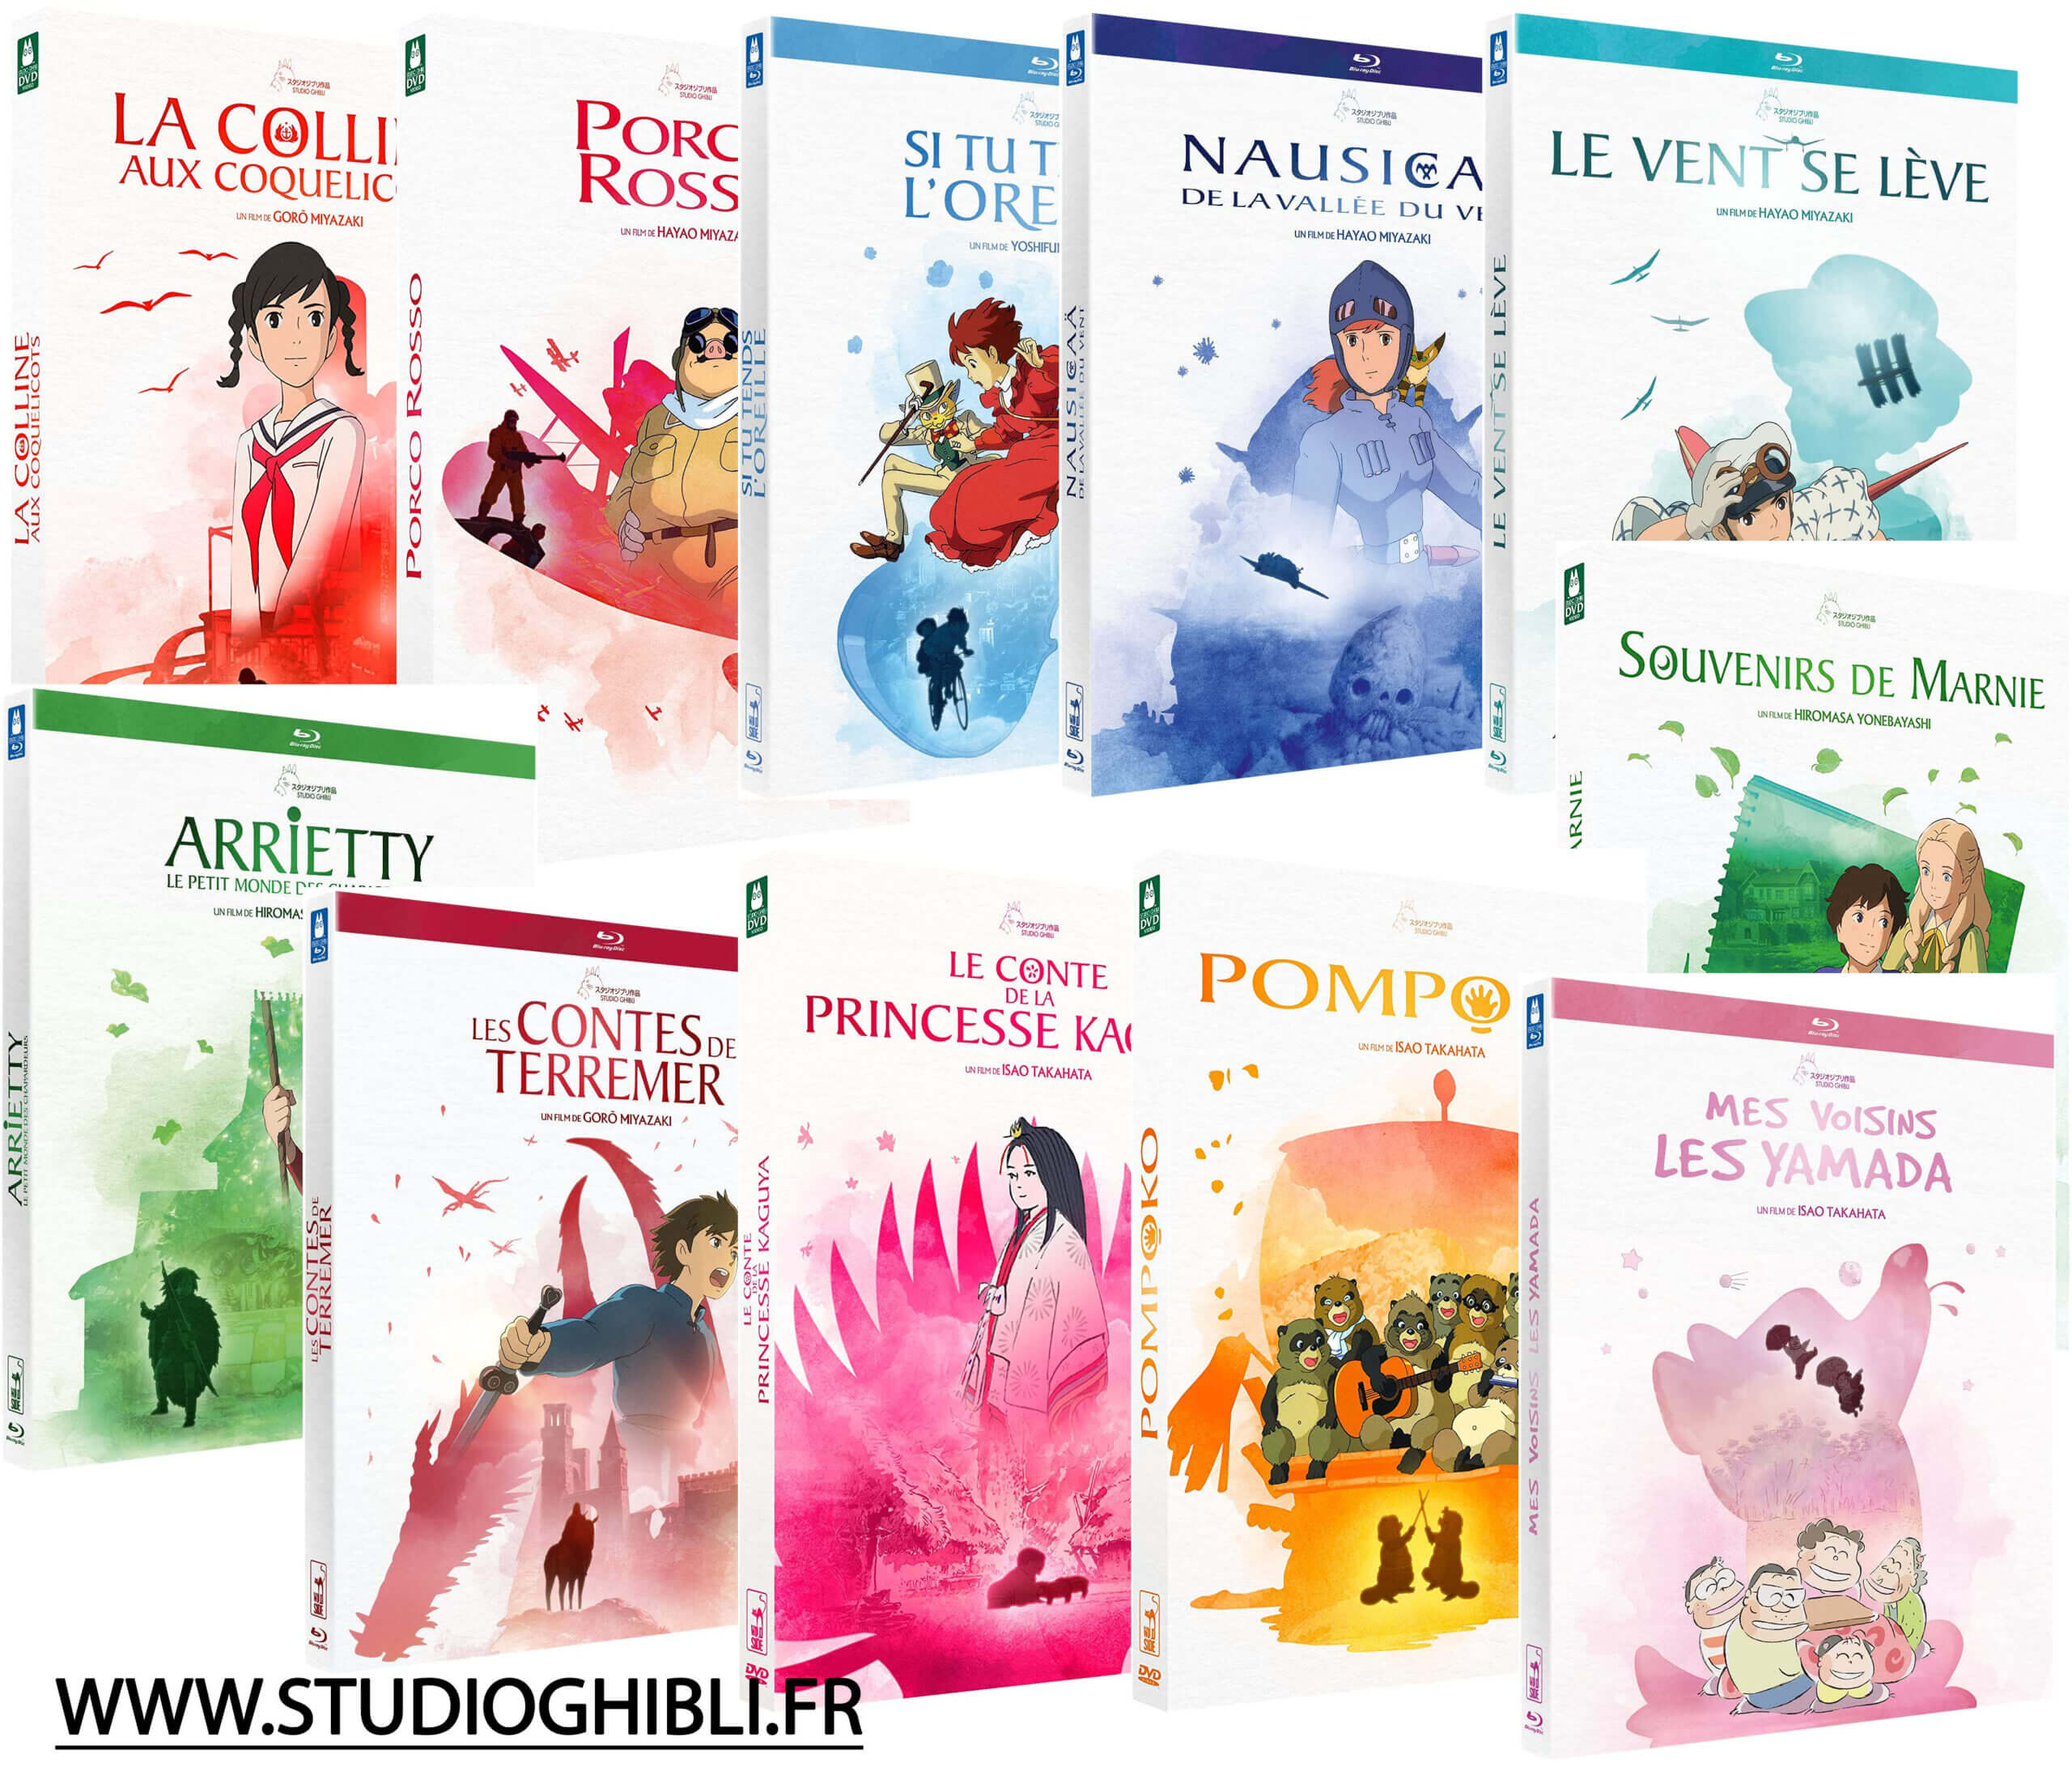 Réédition de tous les DVD et Blu-ray Ghibli chez Wild Side